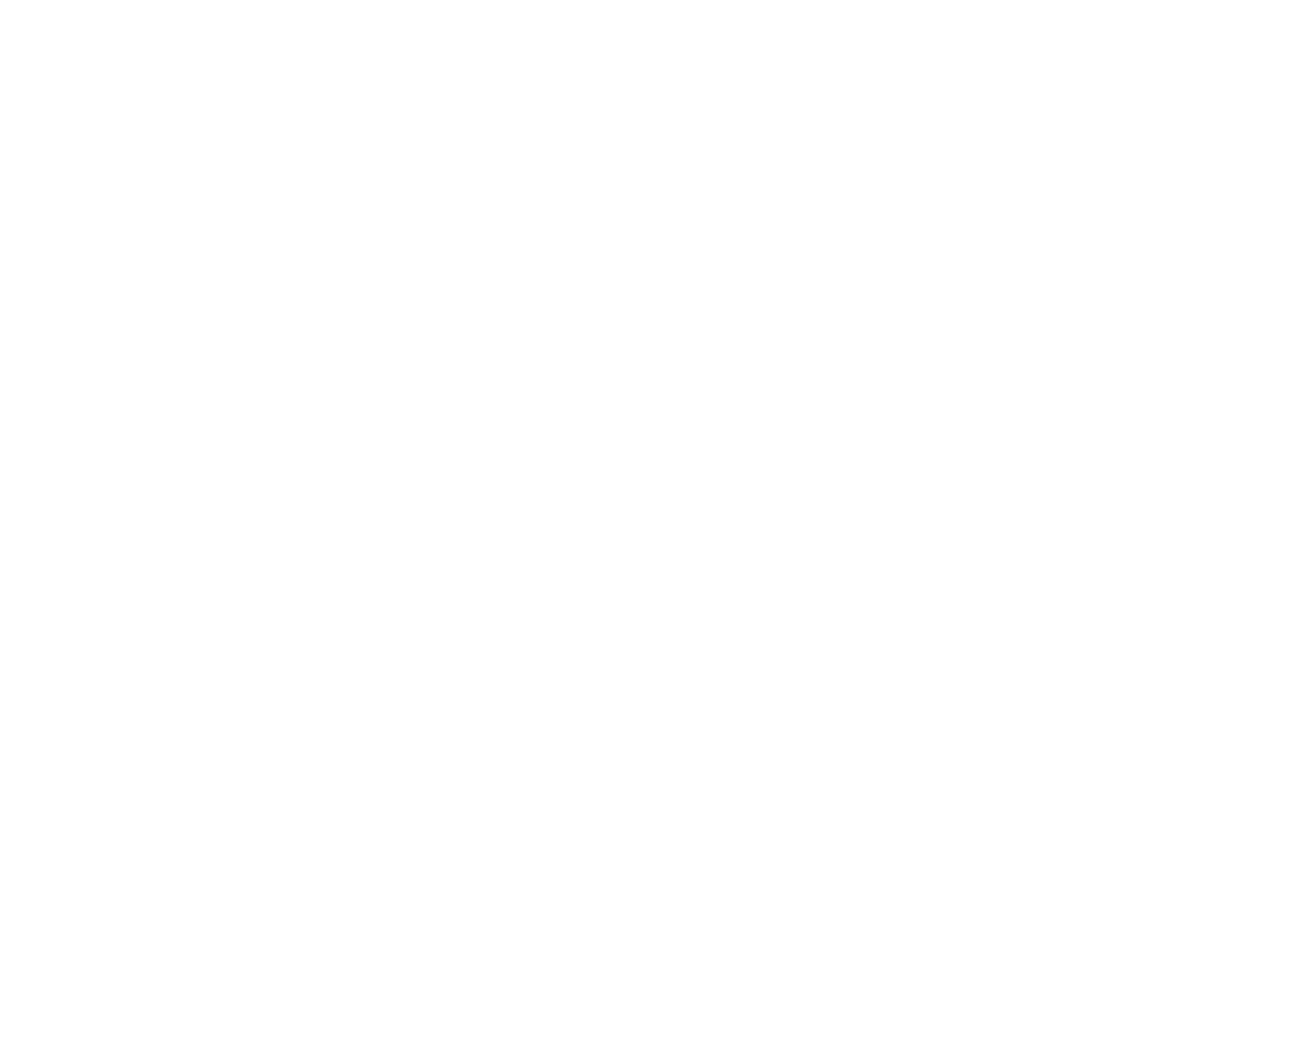 Cyberjammies logo png